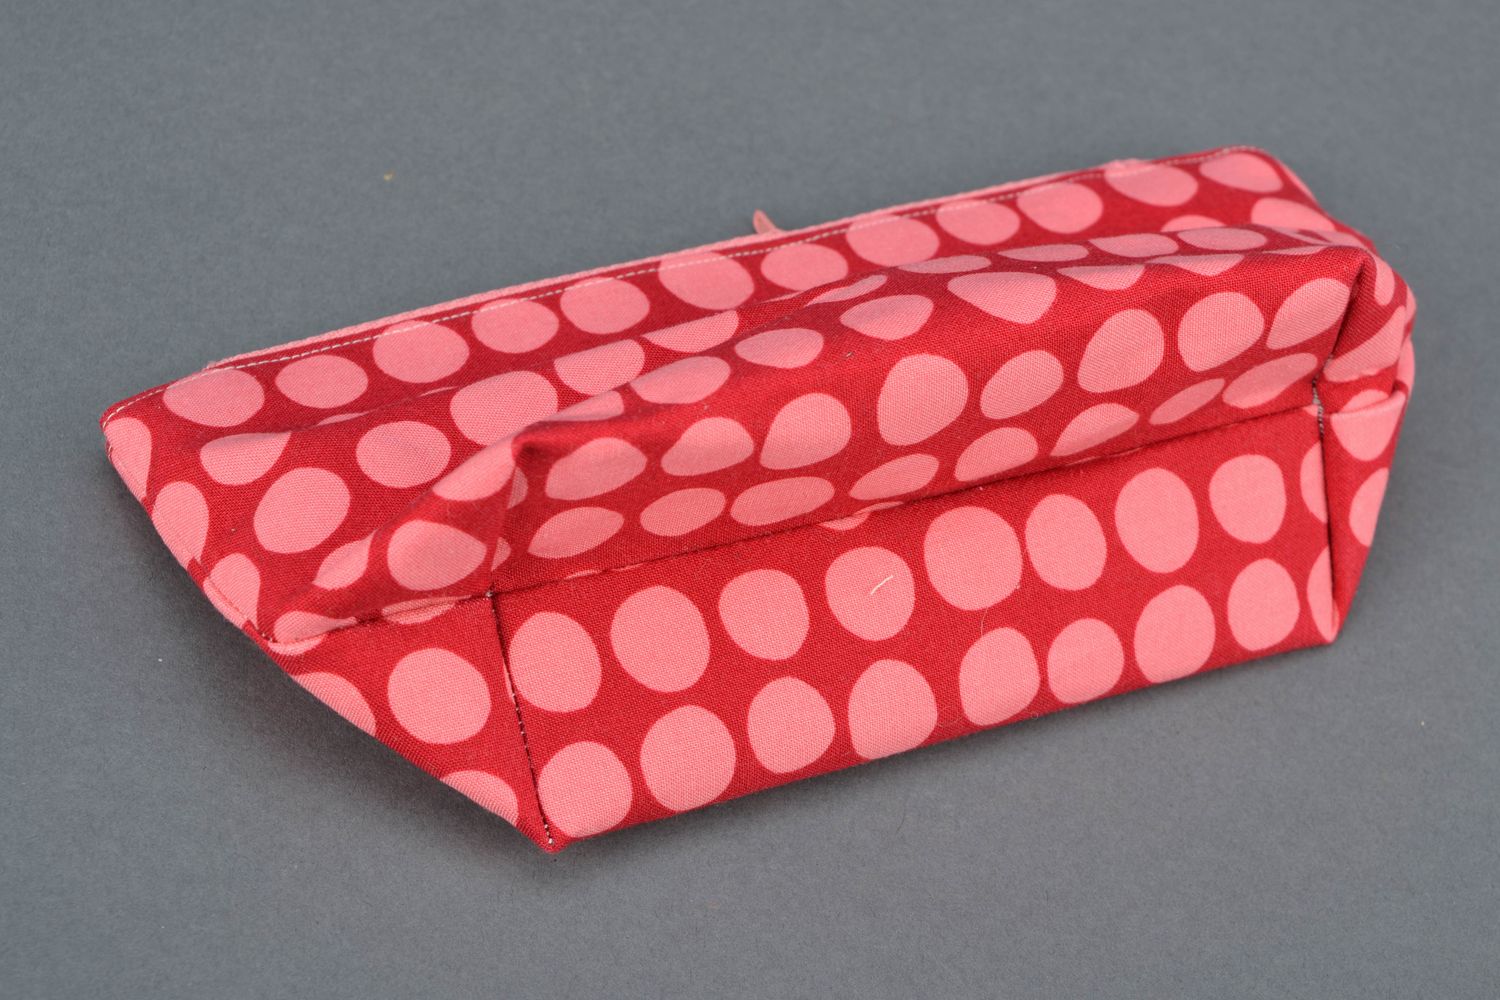 Handmade cosmetic bag sewn of polka dot fabric photo 5